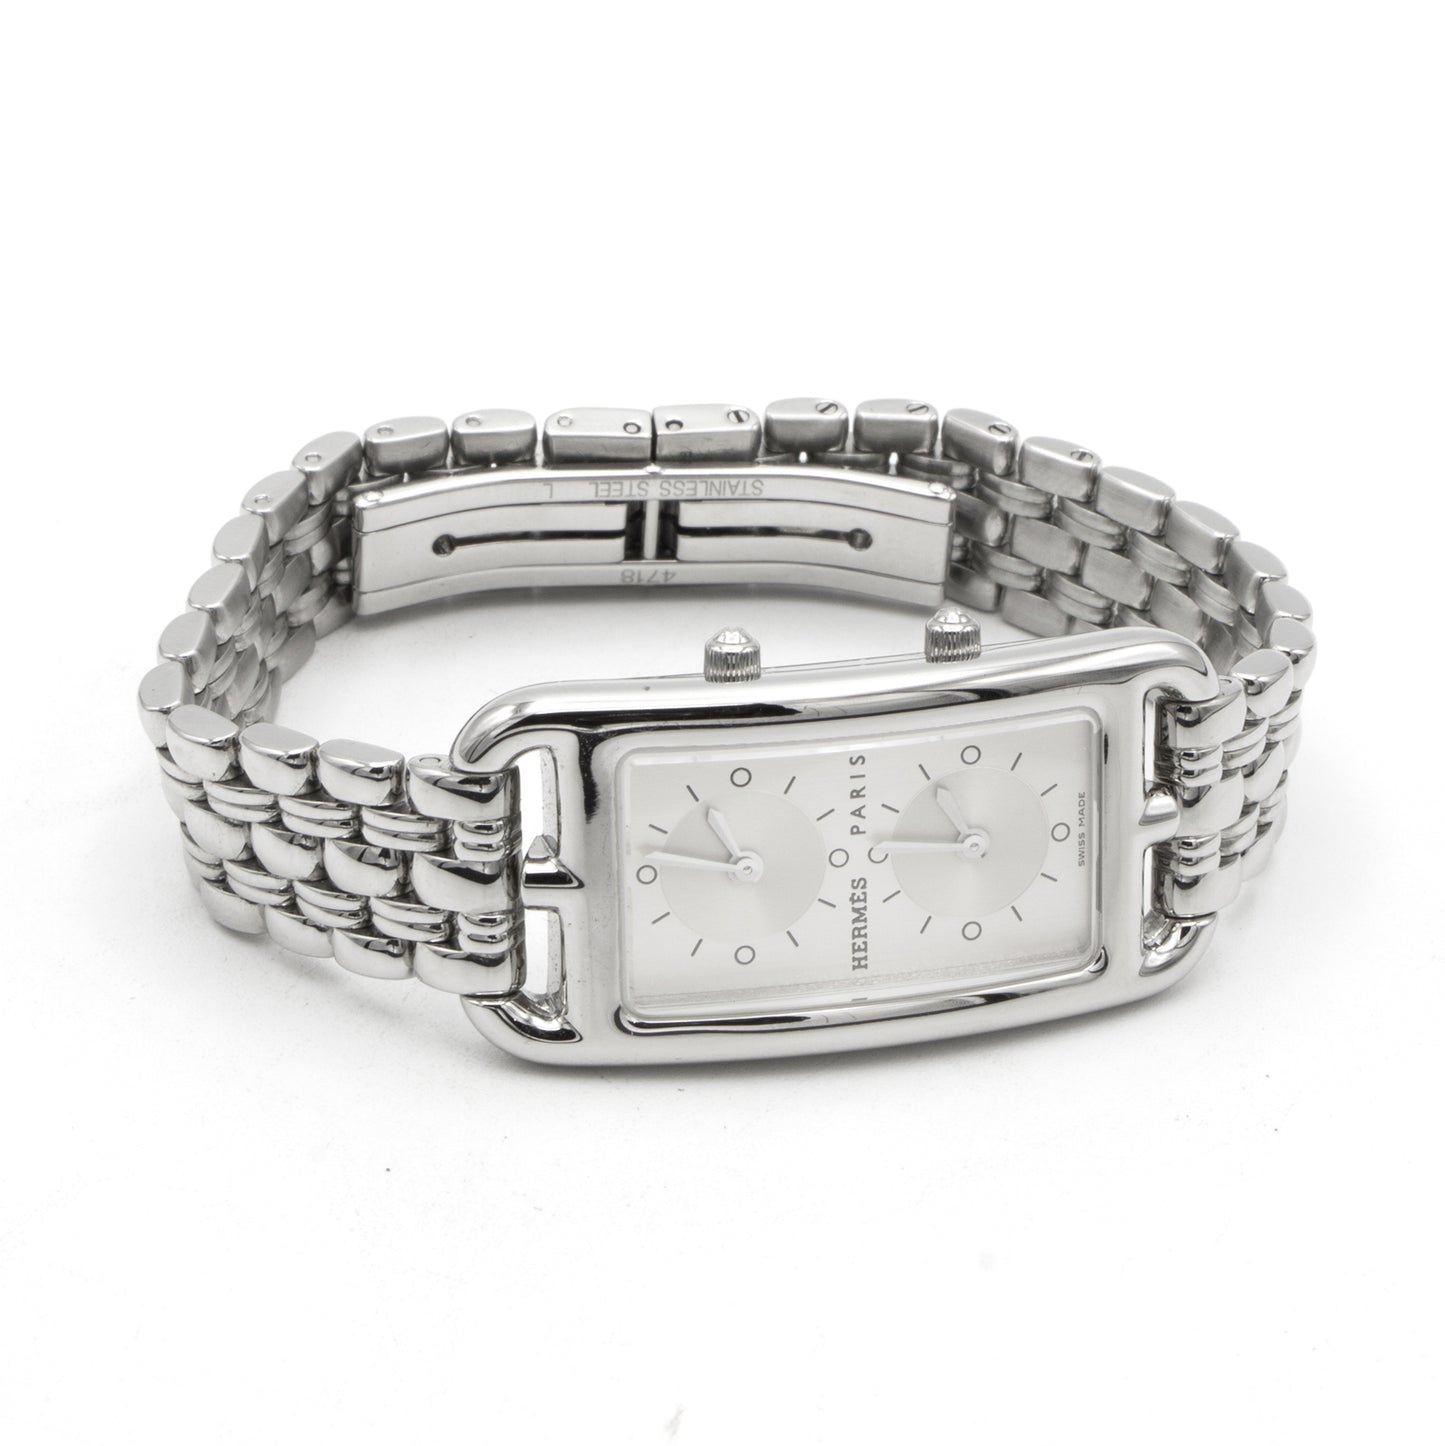 Hermès Cape Cod Dual Time CC3.210 watch